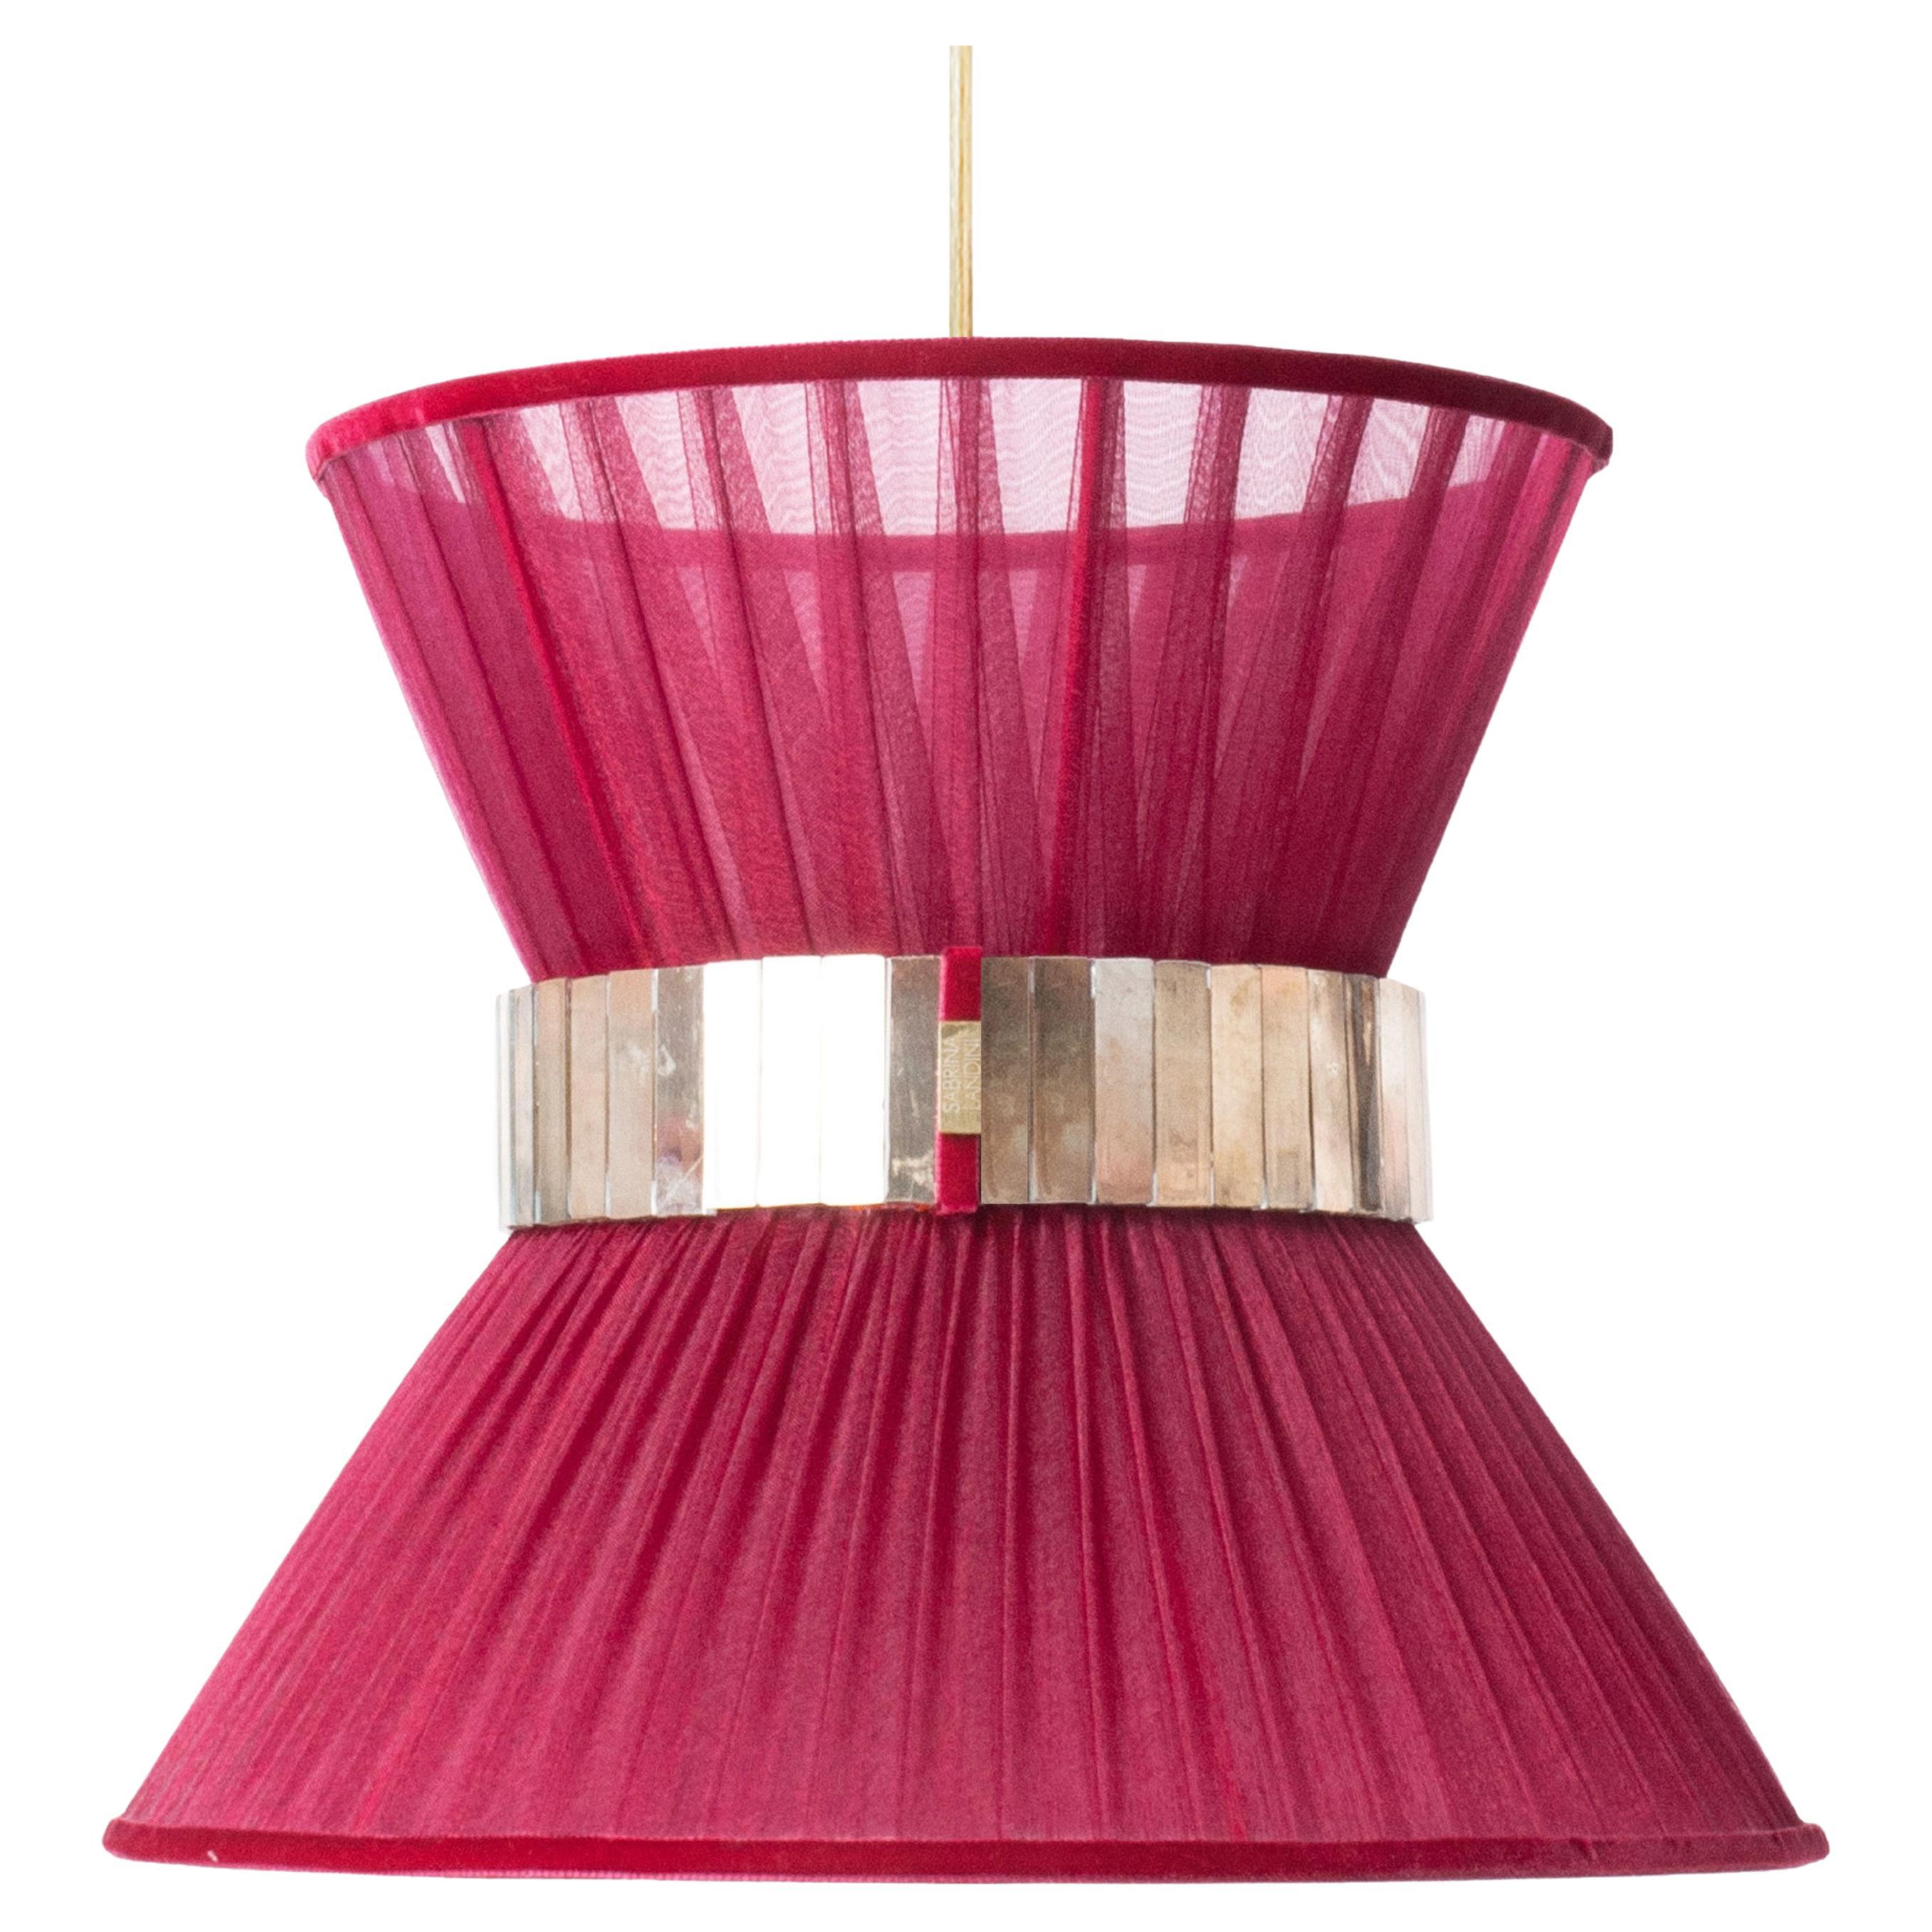 Lampe suspendue contemporaine Tiffany 30, soie rubis, verre argenté, laiton